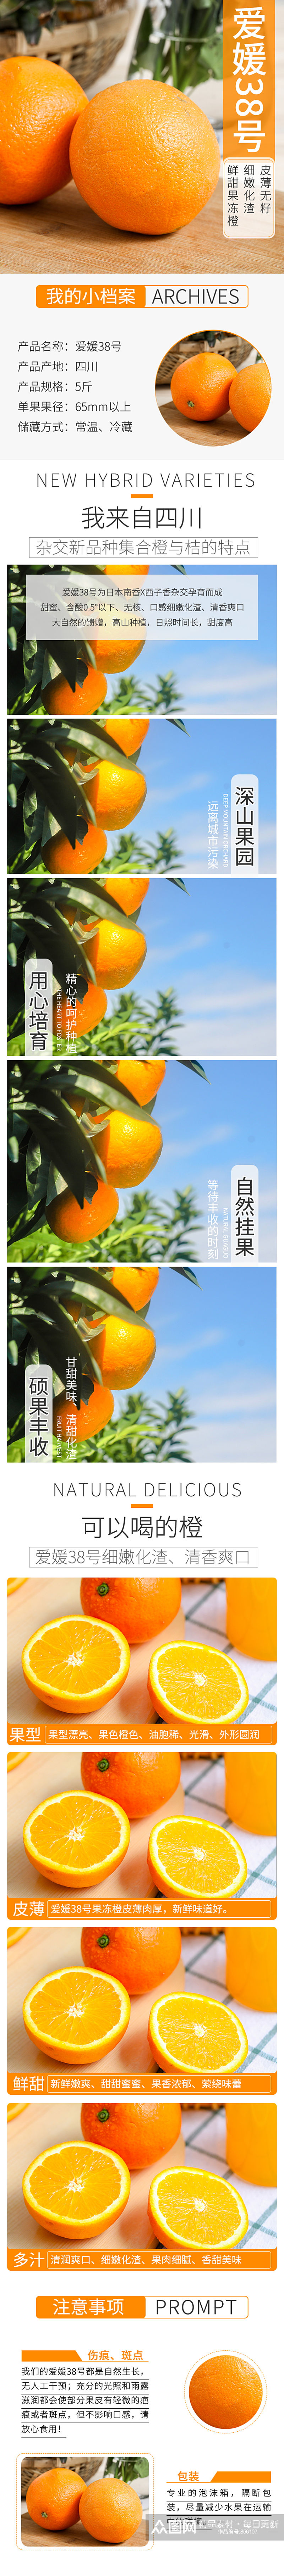 果冻橙水果详情页模版素材